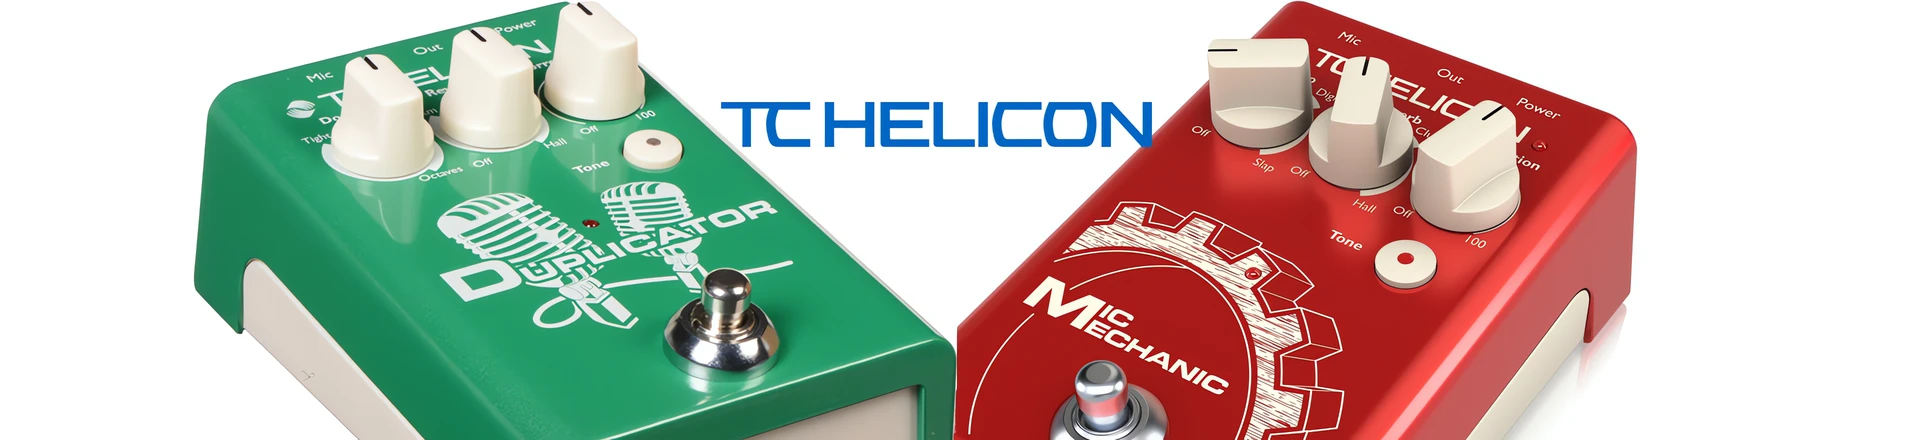 TC Helicon Mic Mechanic i Duplicator z nowym oprogramowaniem